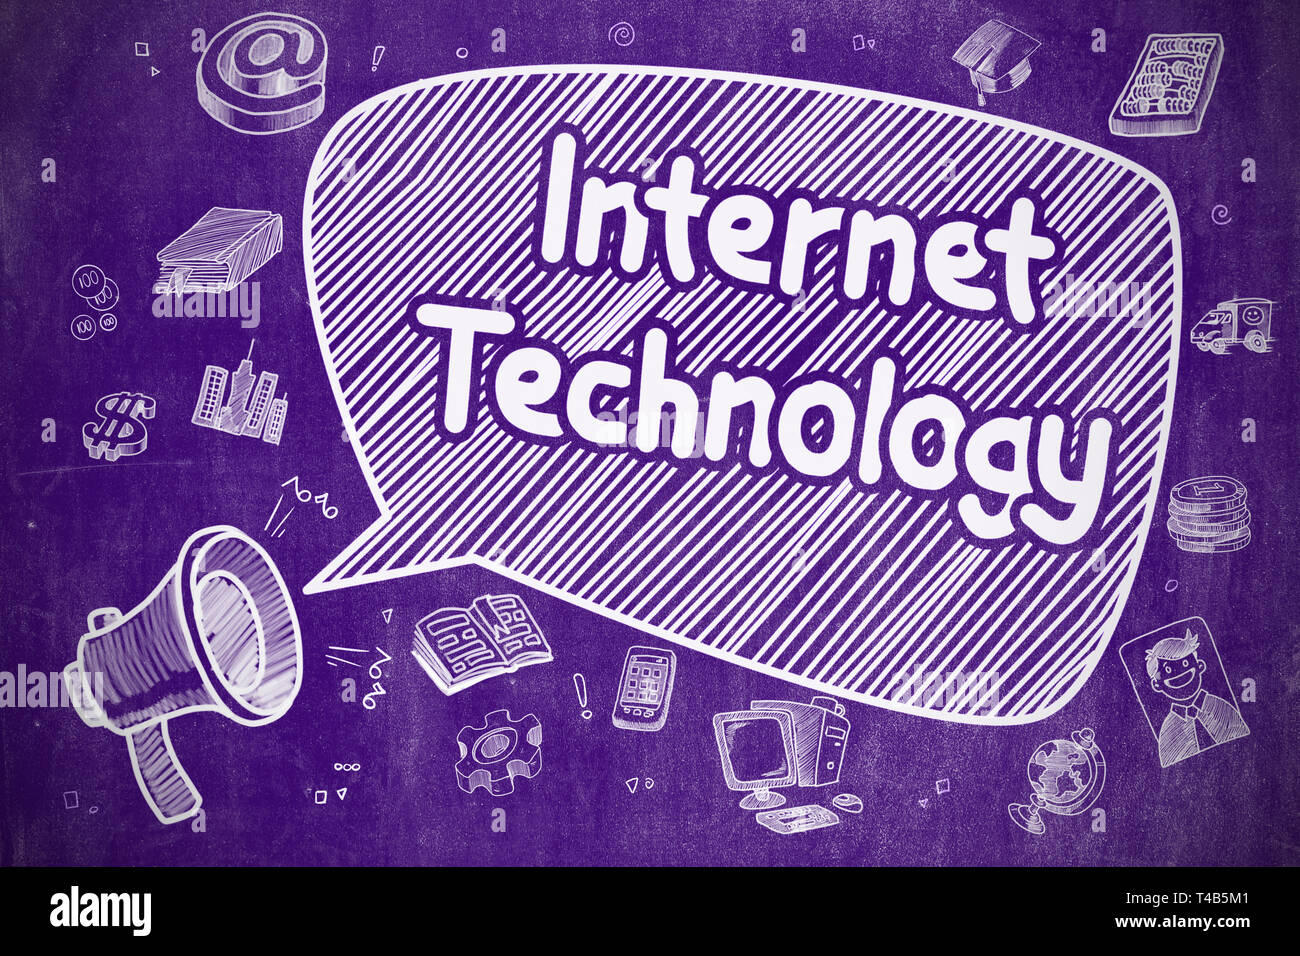 Internet Technology - Speech Bubble on Purple Chalkboard. Stock Photo